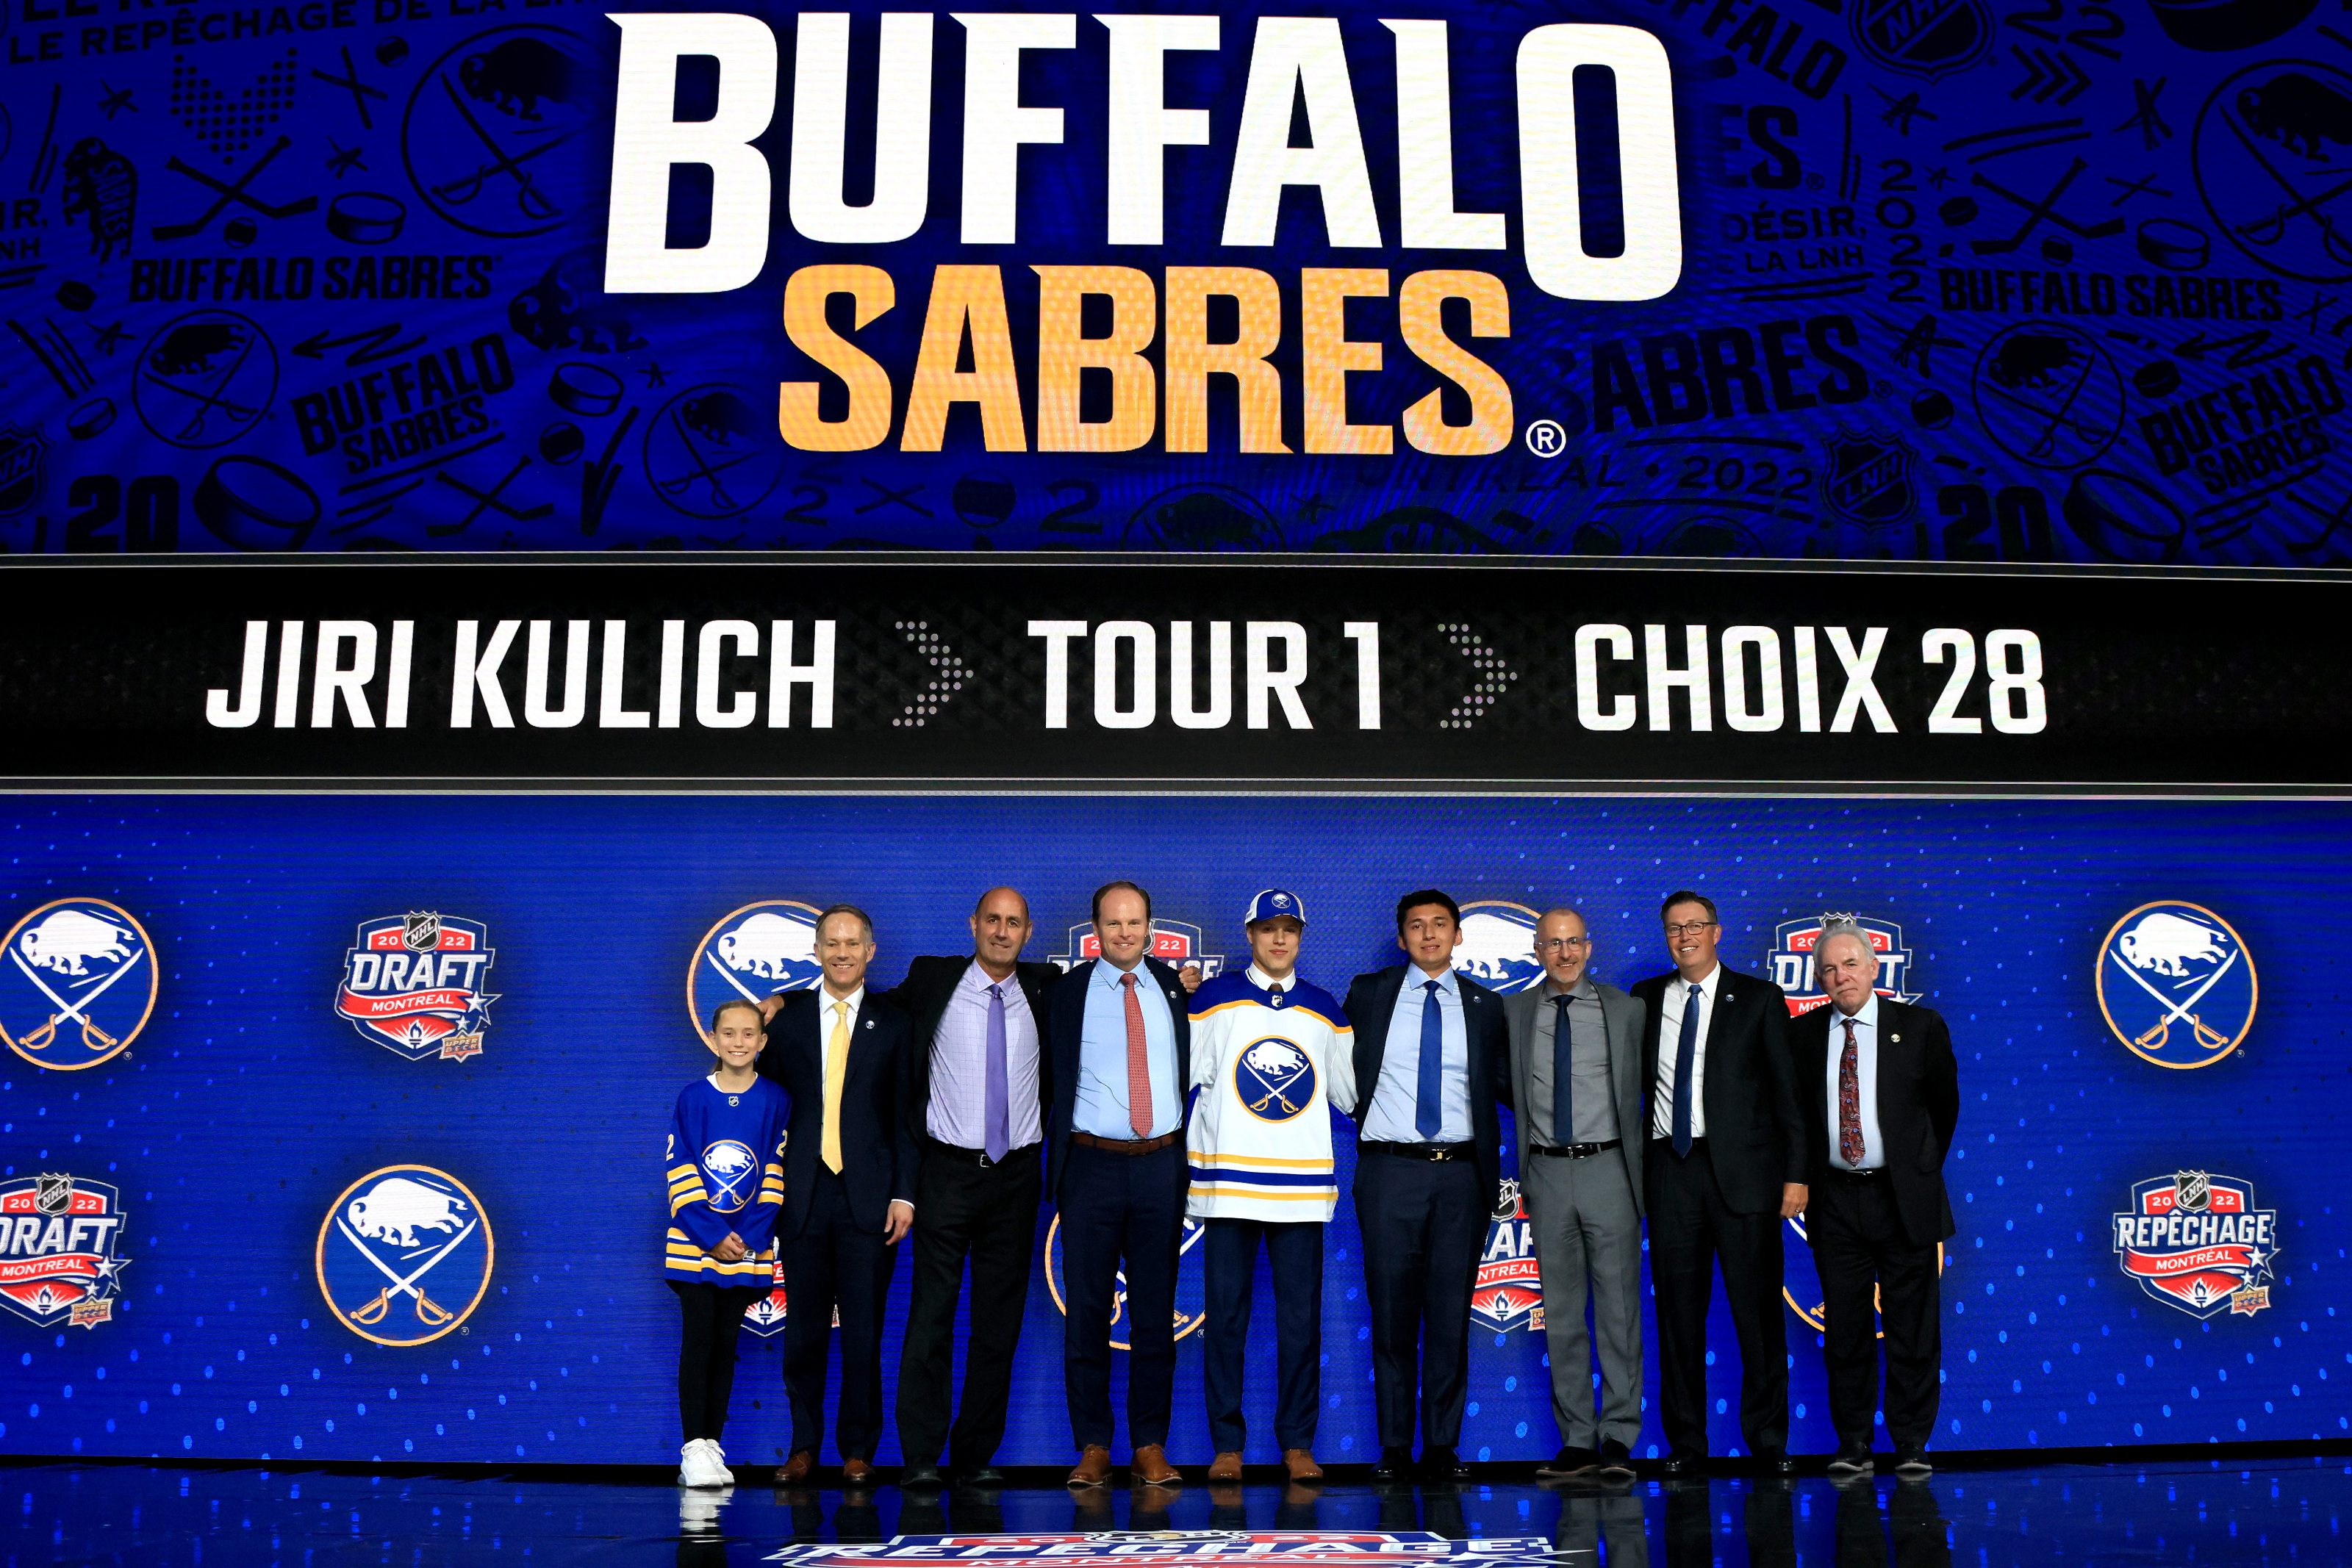 BUF Records - Buffalo Sabres - Draft Selections